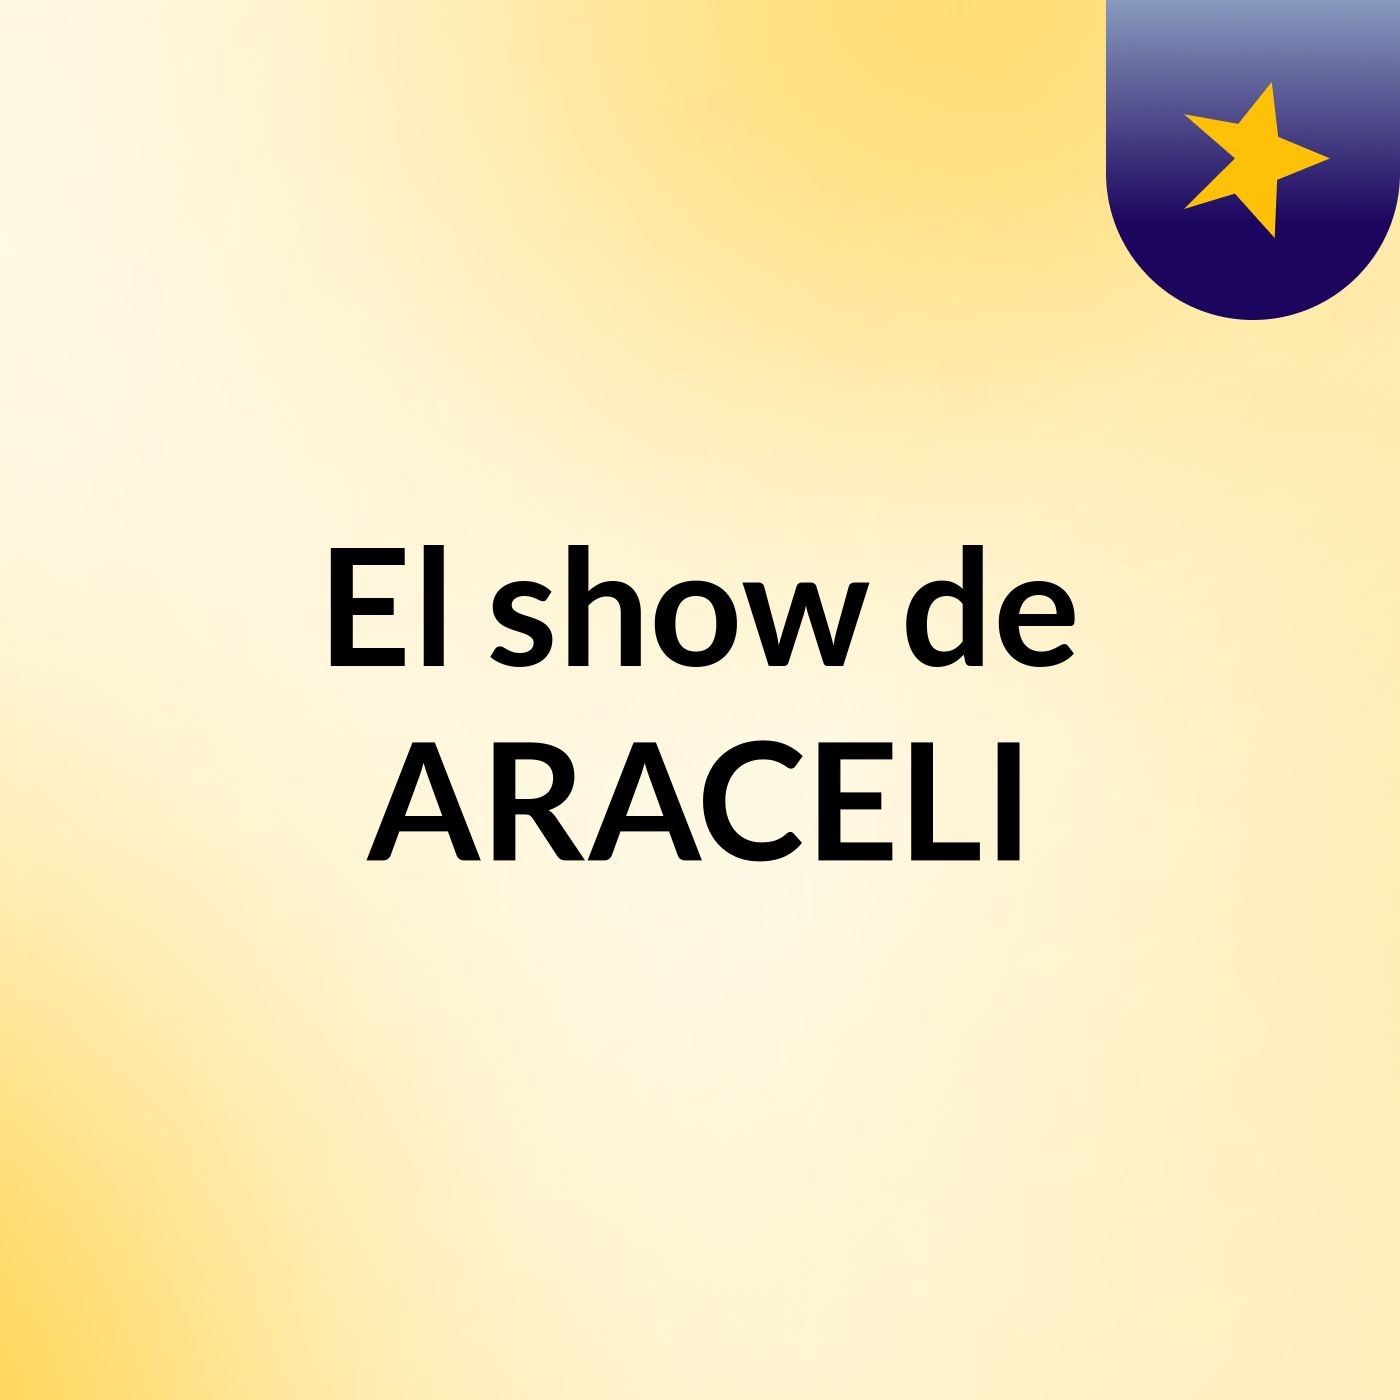 El show de ARACELI